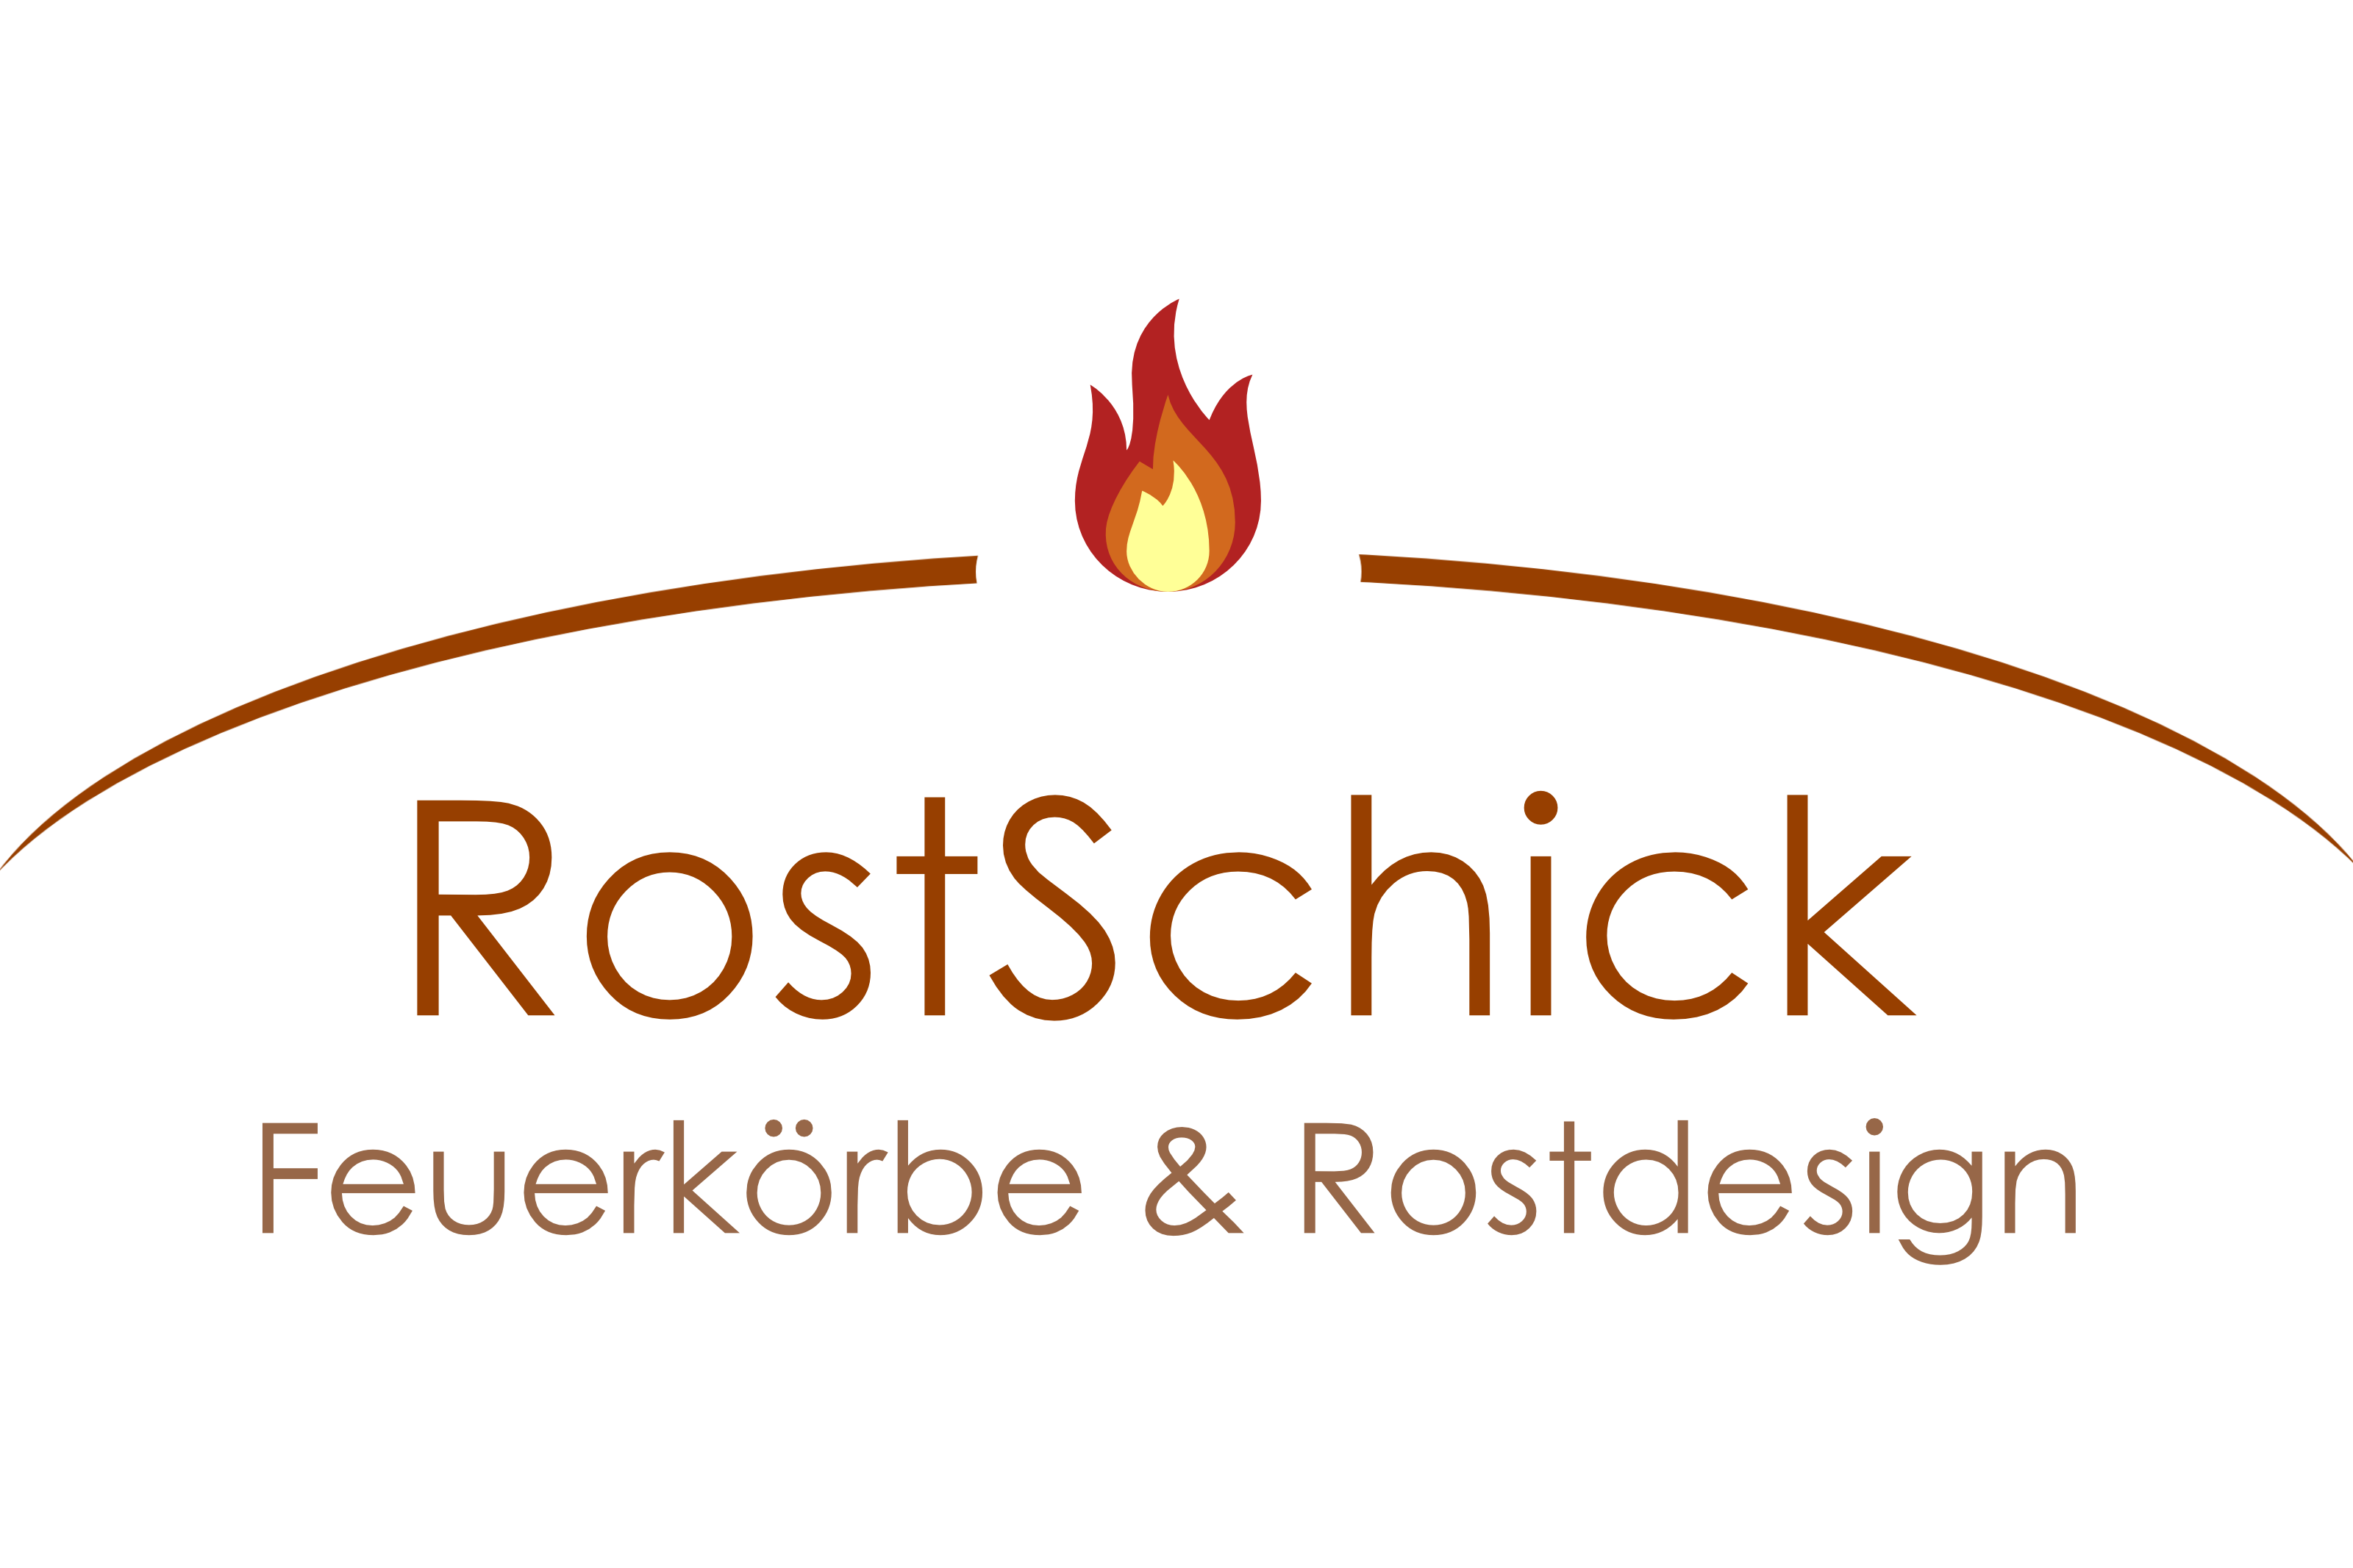 RostSchick